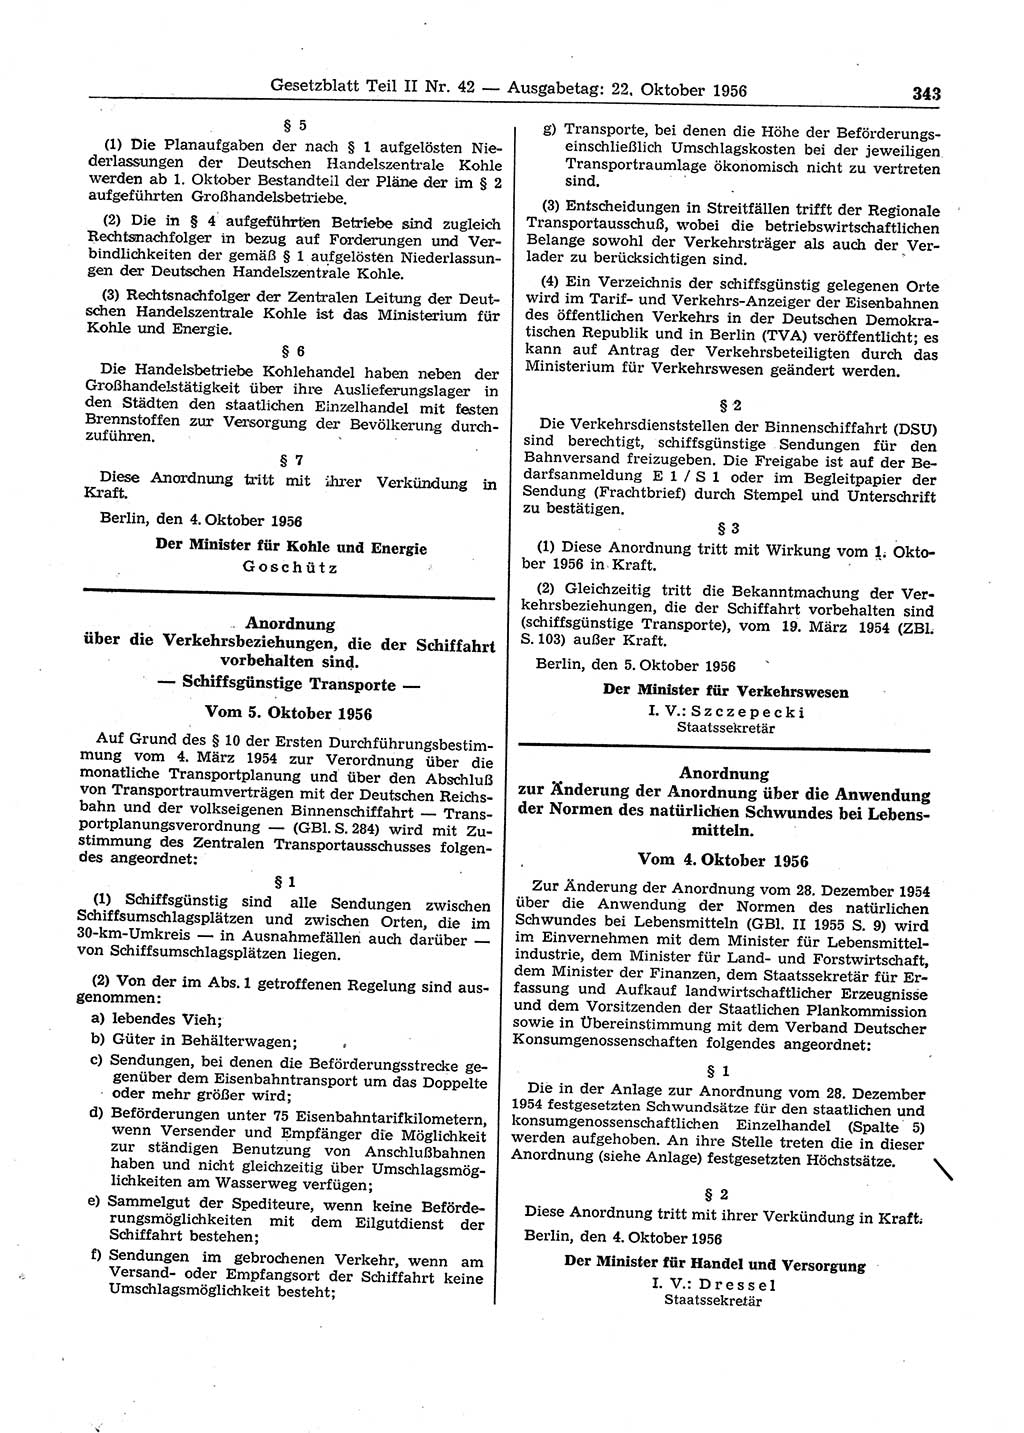 Gesetzblatt (GBl.) der Deutschen Demokratischen Republik (DDR) Teil ⅠⅠ 1956, Seite 343 (GBl. DDR ⅠⅠ 1956, S. 343)